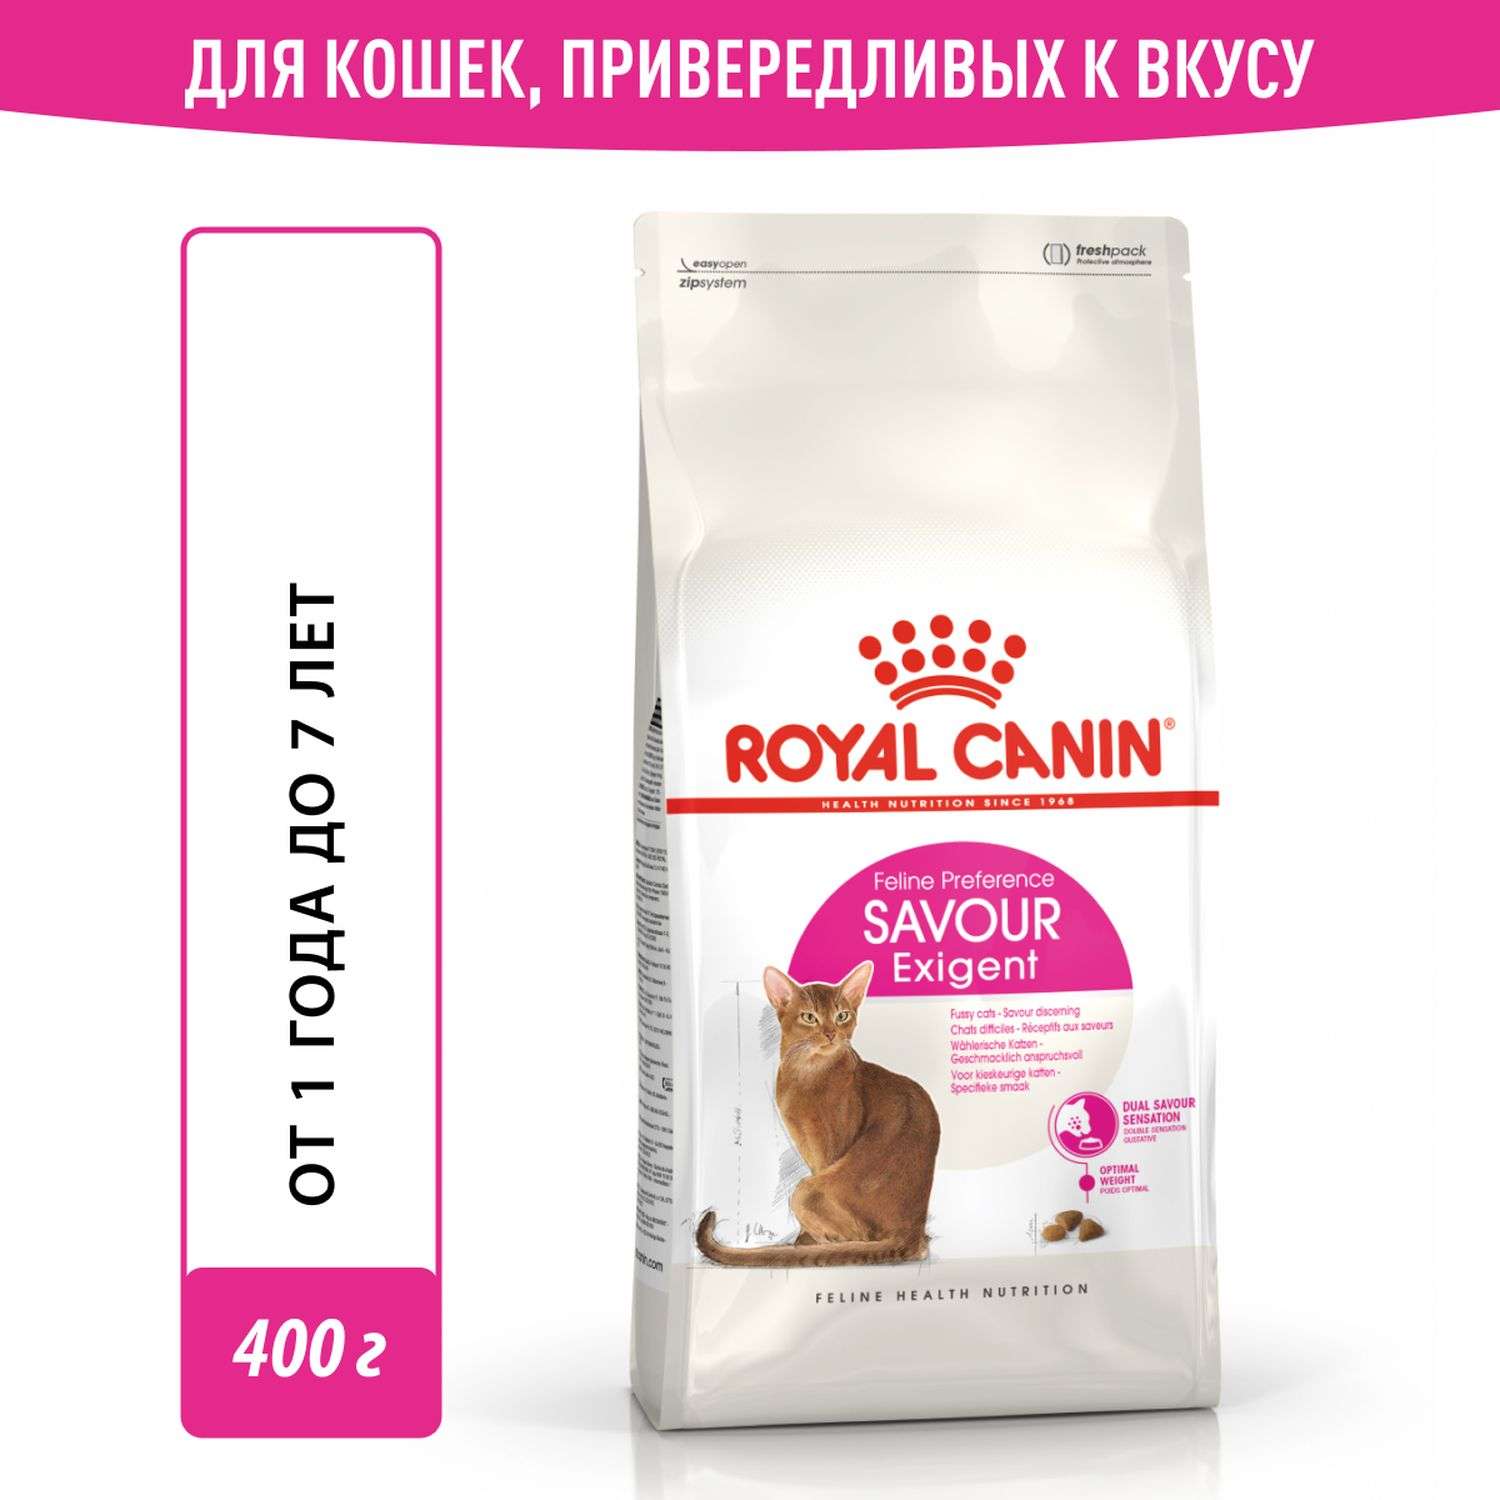 Корм сухой для кошек ROYAL CANIN Exigent Savour 400г привередливых к вкусу продукта - фото 1